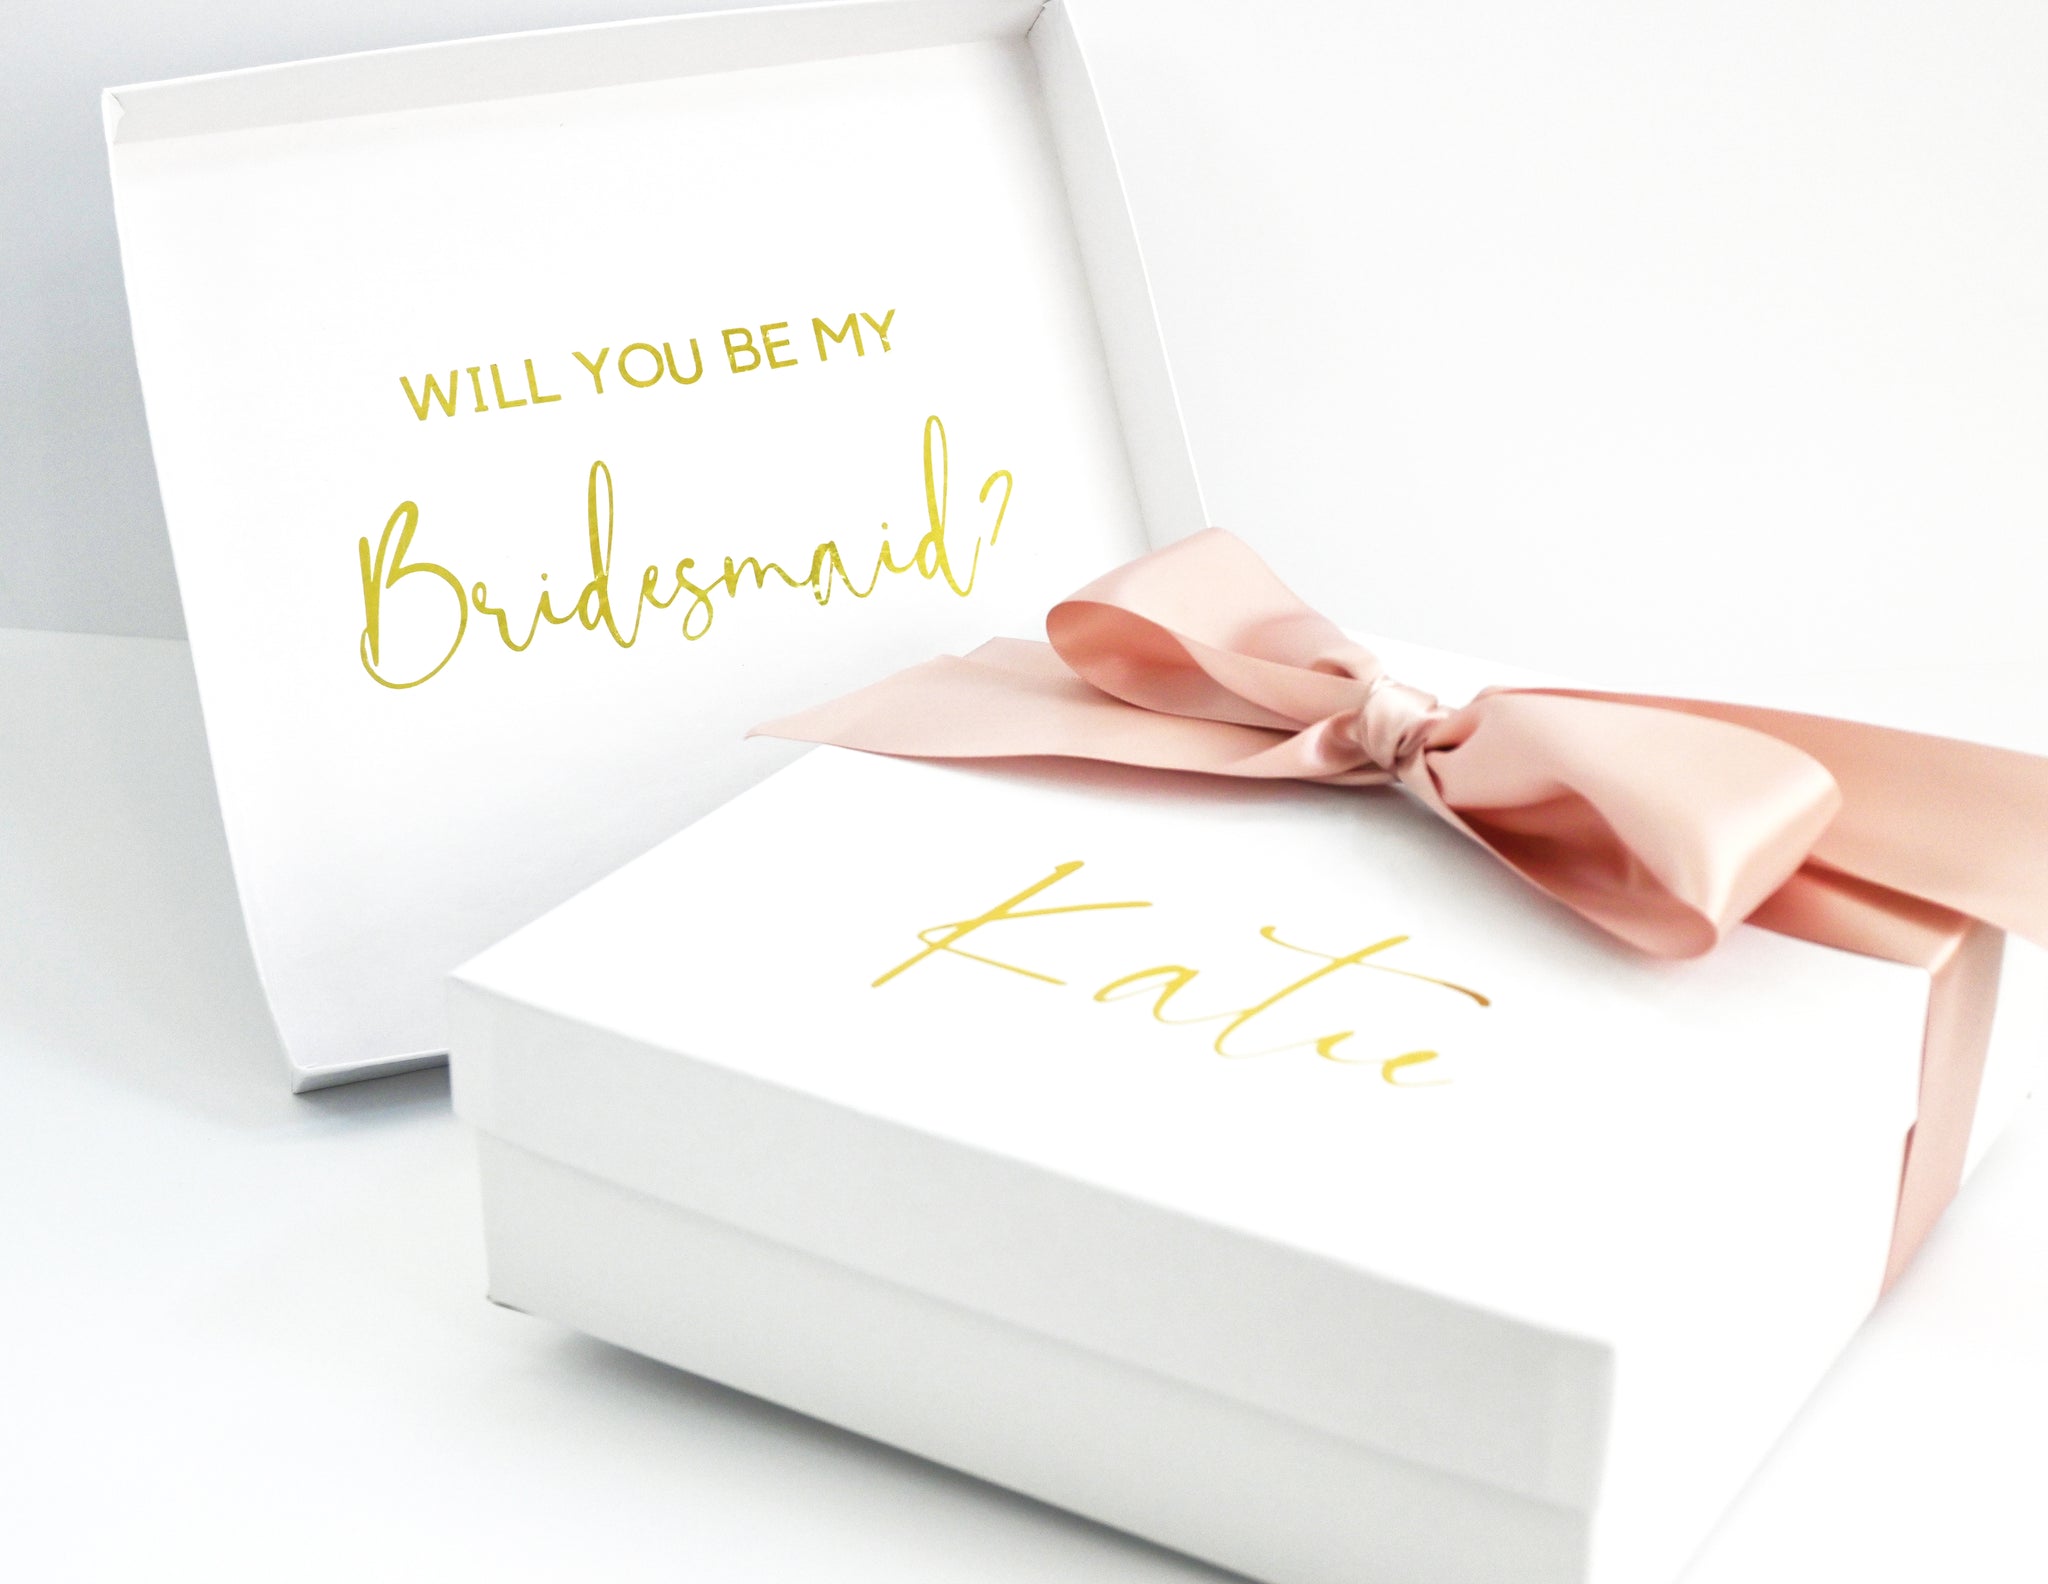 Squad Goals Bridesmaid Proposal Box